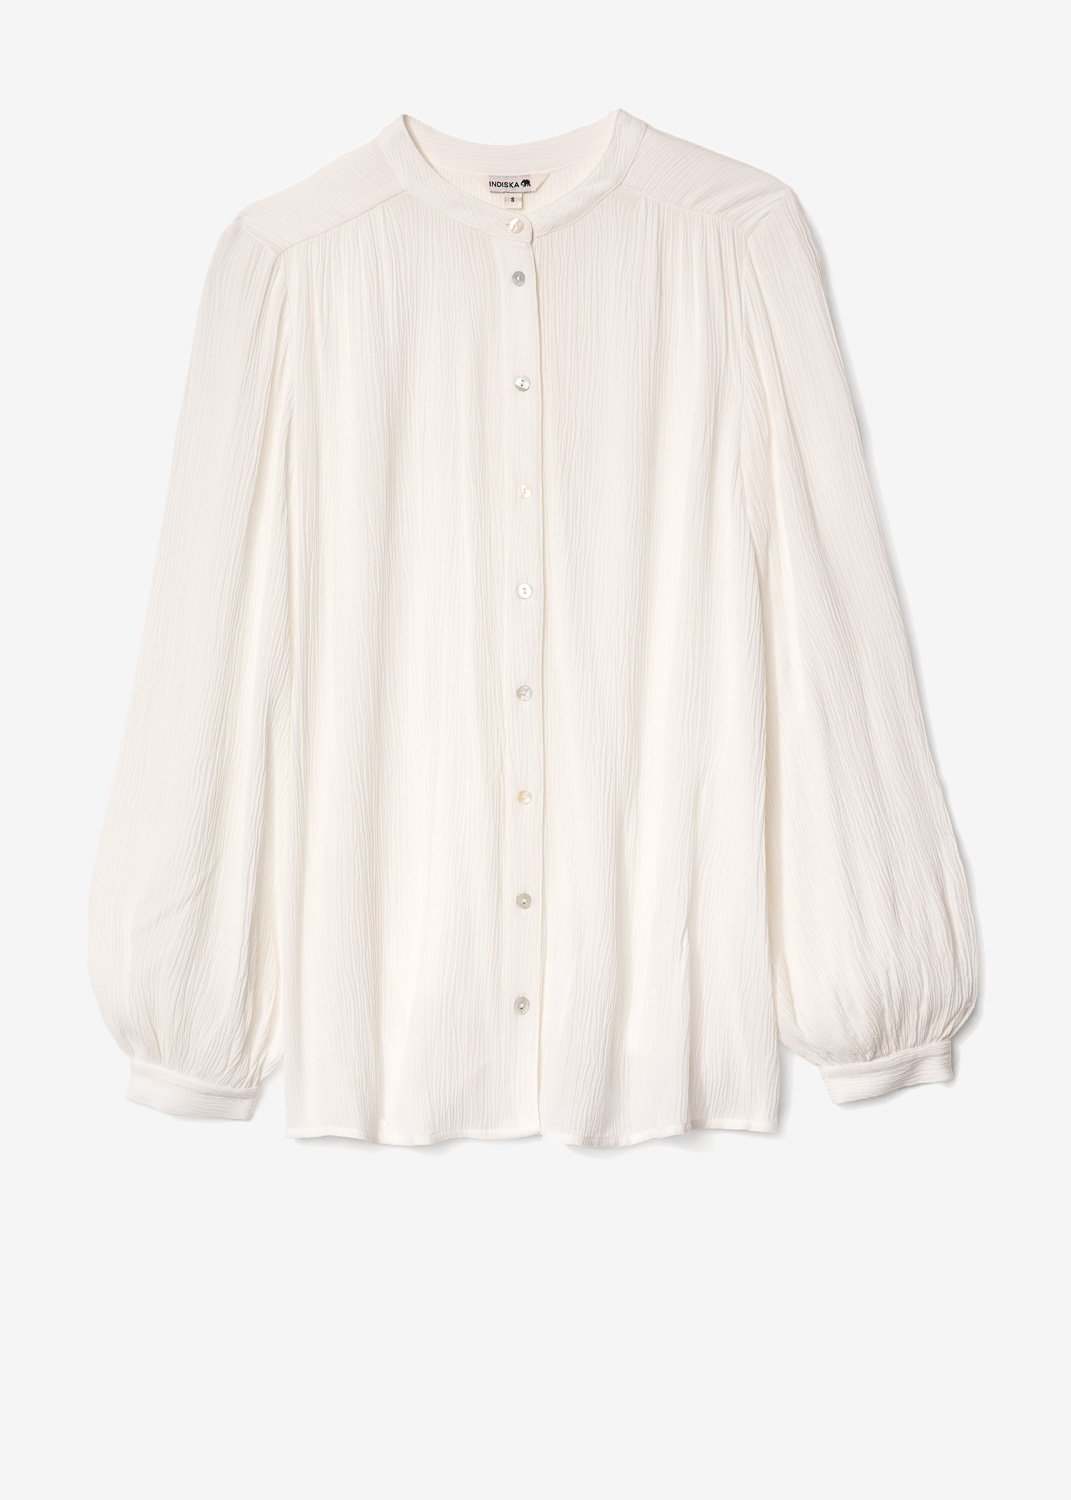 White crinkle shirt